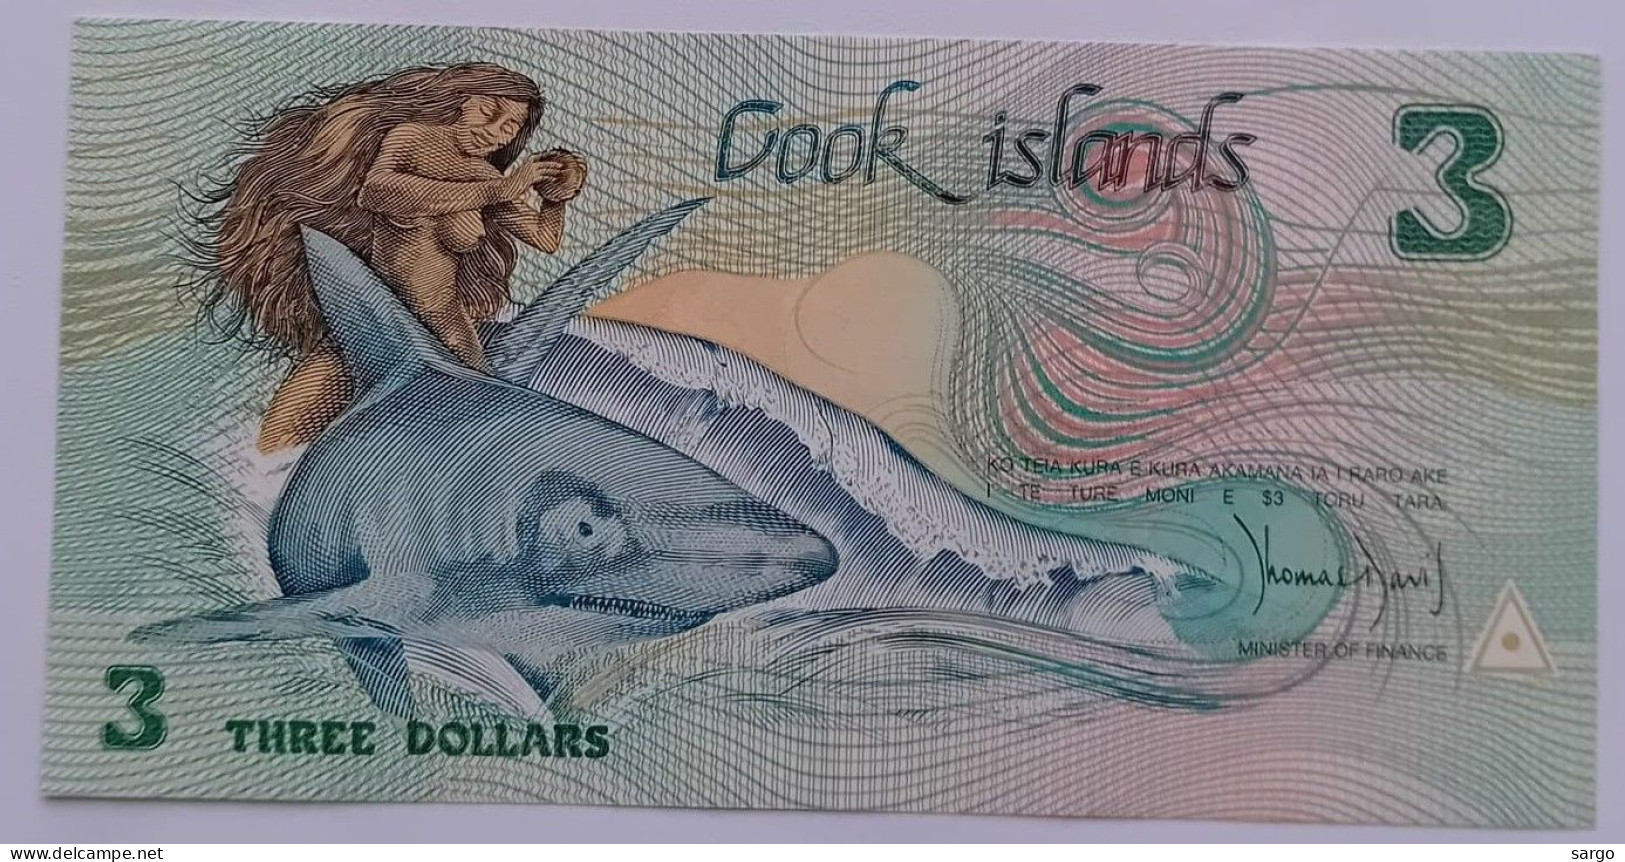 COOK ISLANDS - 3 DOLLARS - 1992 - UNC - P 6  - BANKNOTES - PAPER MONEY - CARTAMONETA - - Cook Islands